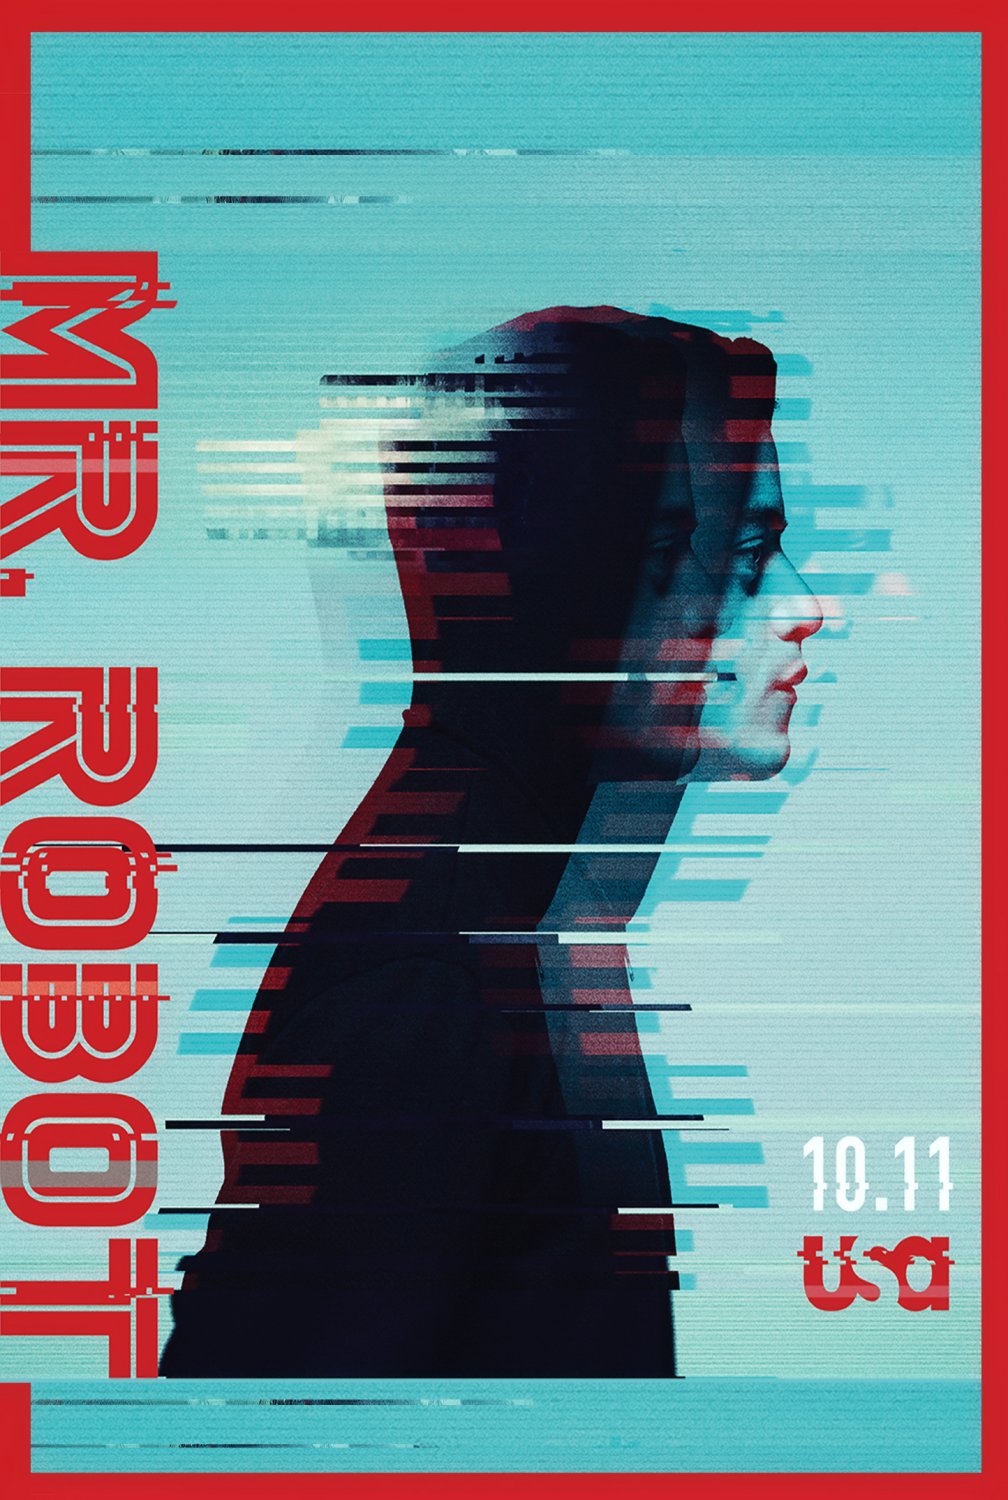 Mr. Robot Season 3  13"x19" (32cm/49cm) Poster